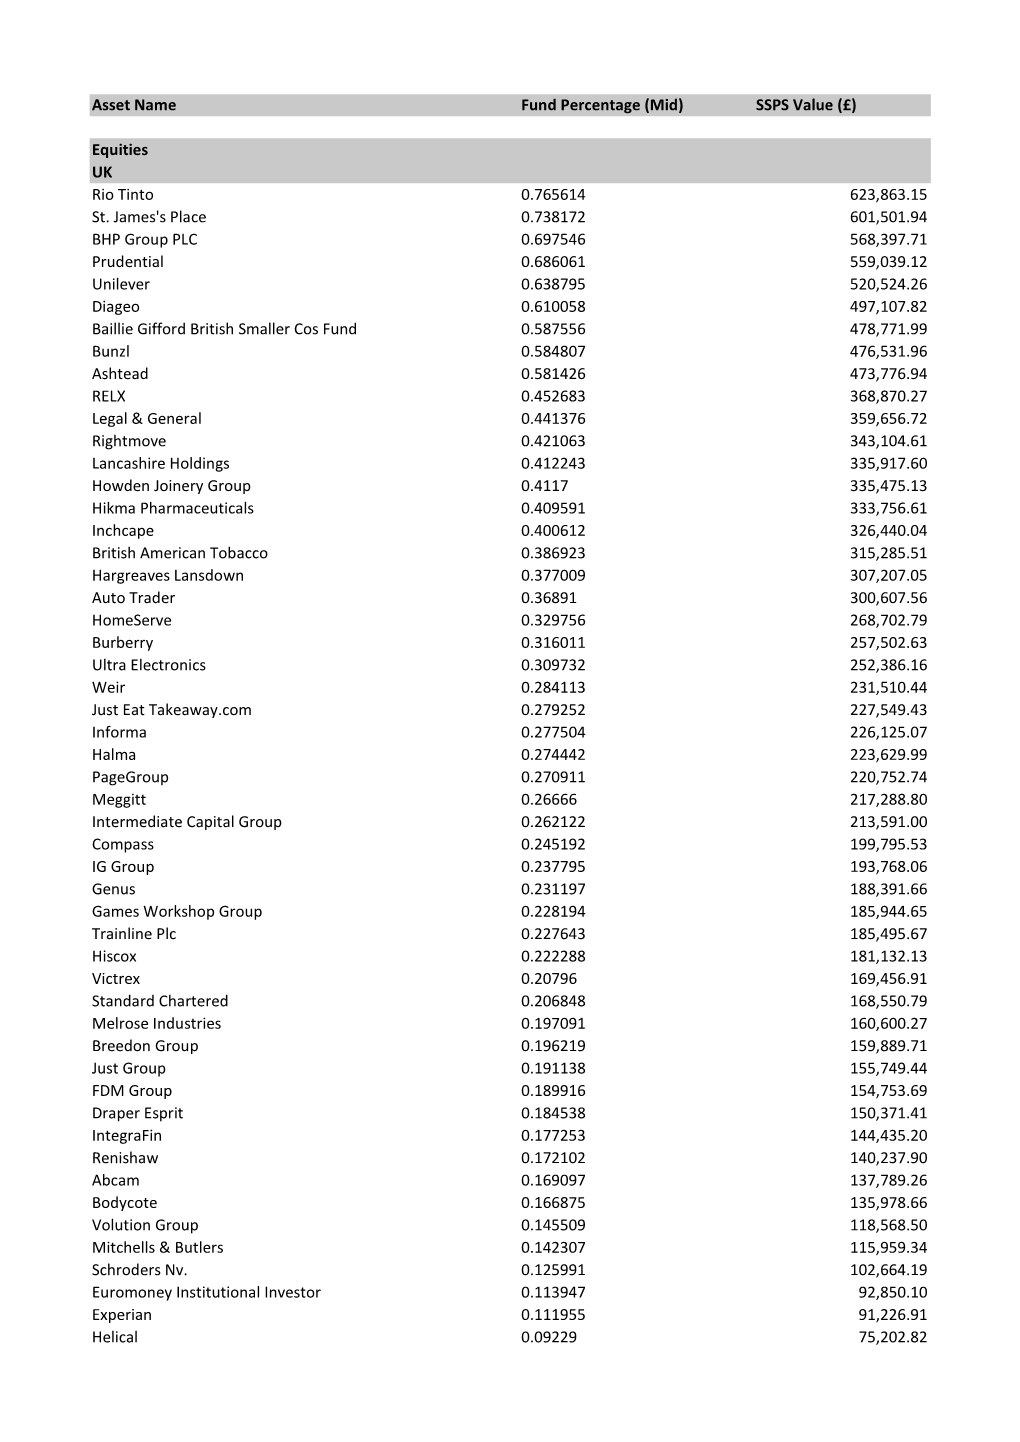 Full List of Holdings.Xlsx